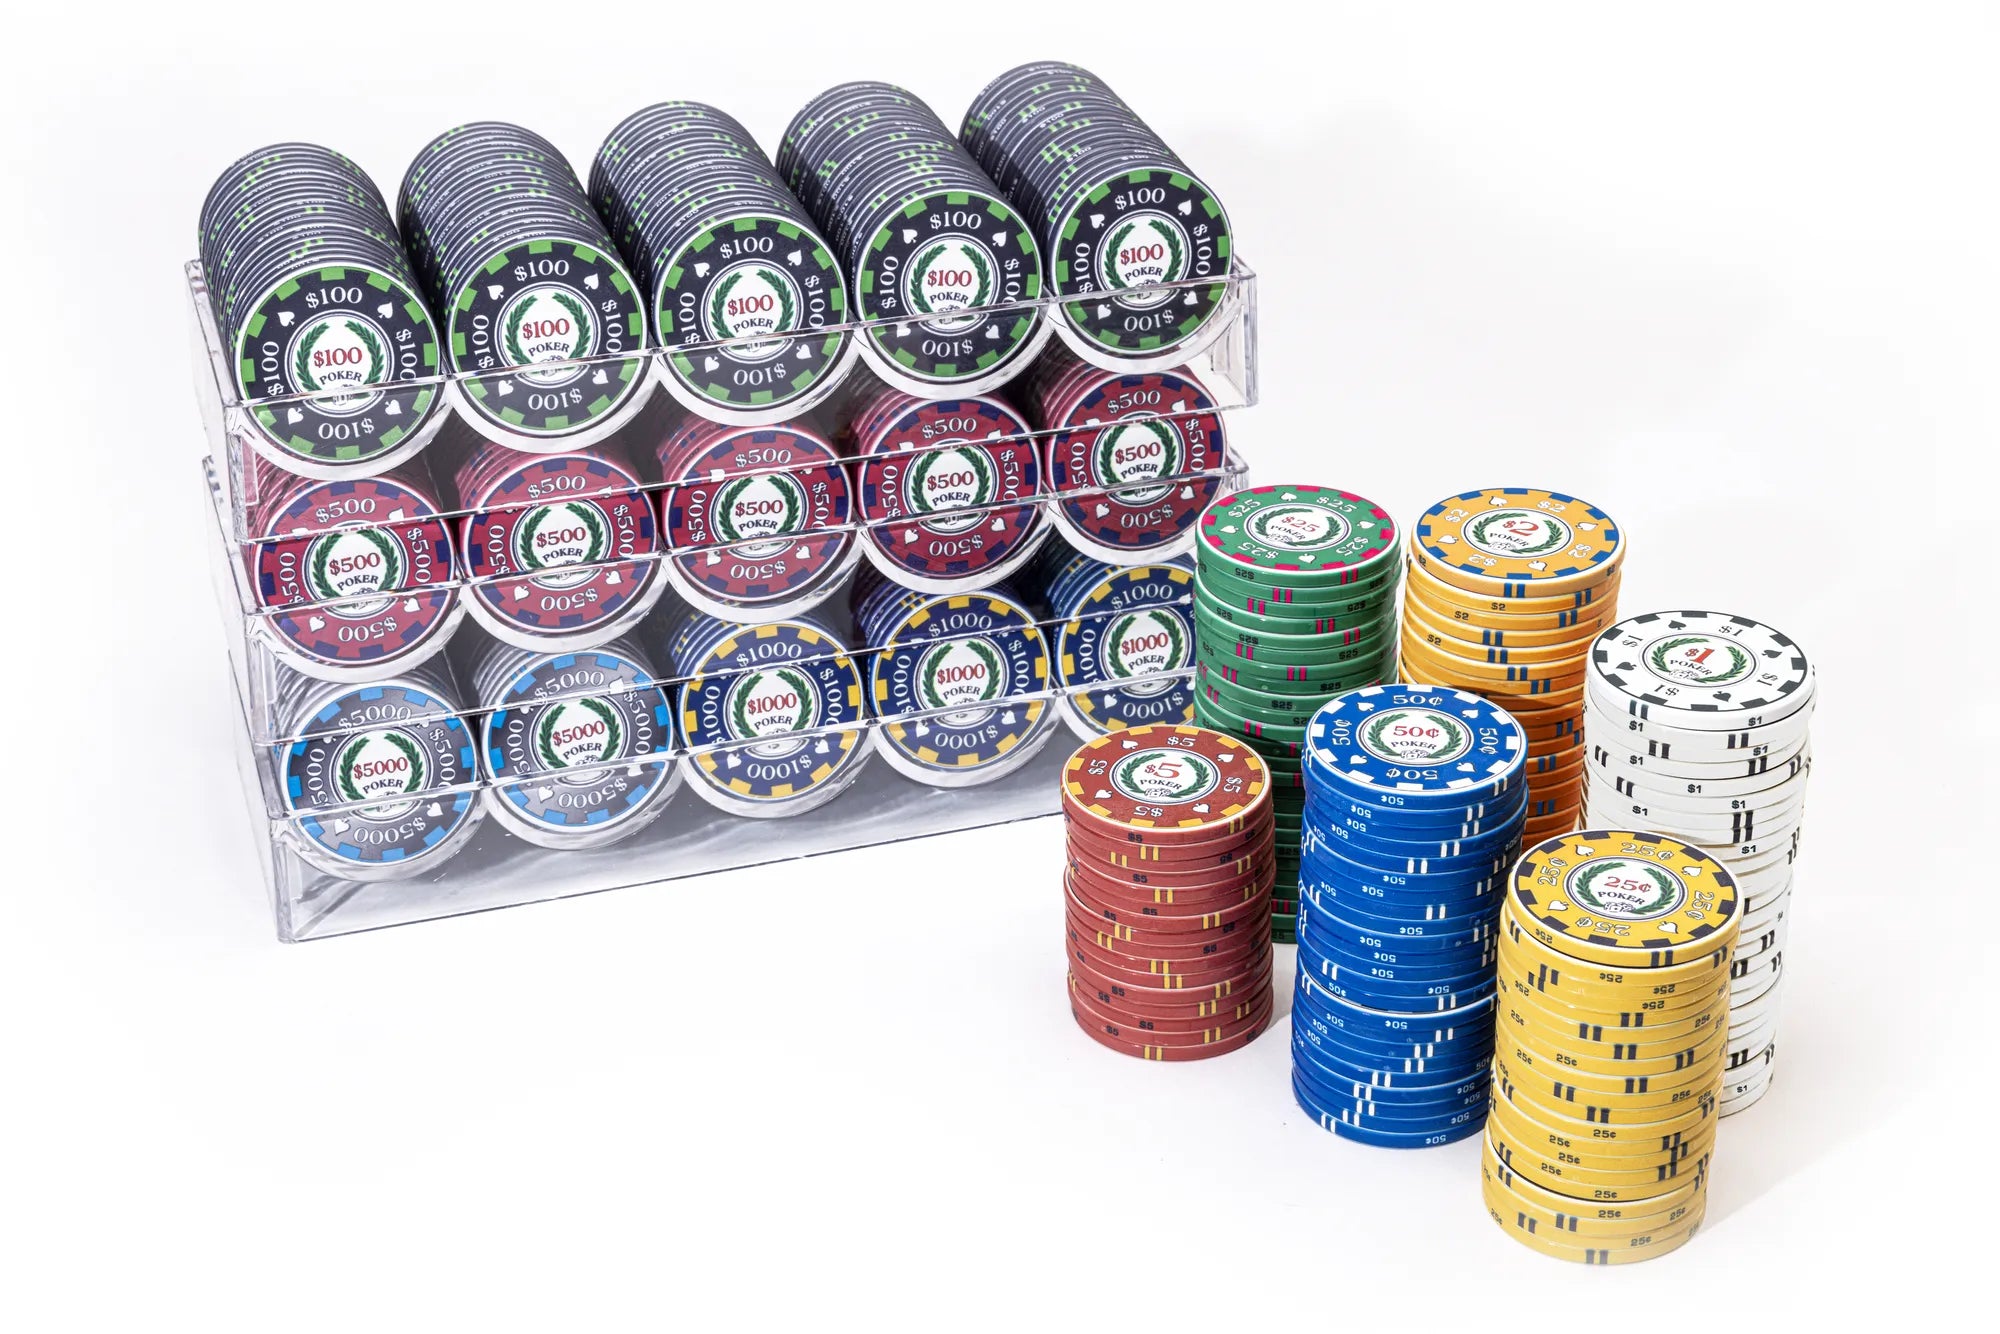 Casino-grade ceramic poker chips - Archetype™ Poker Chips